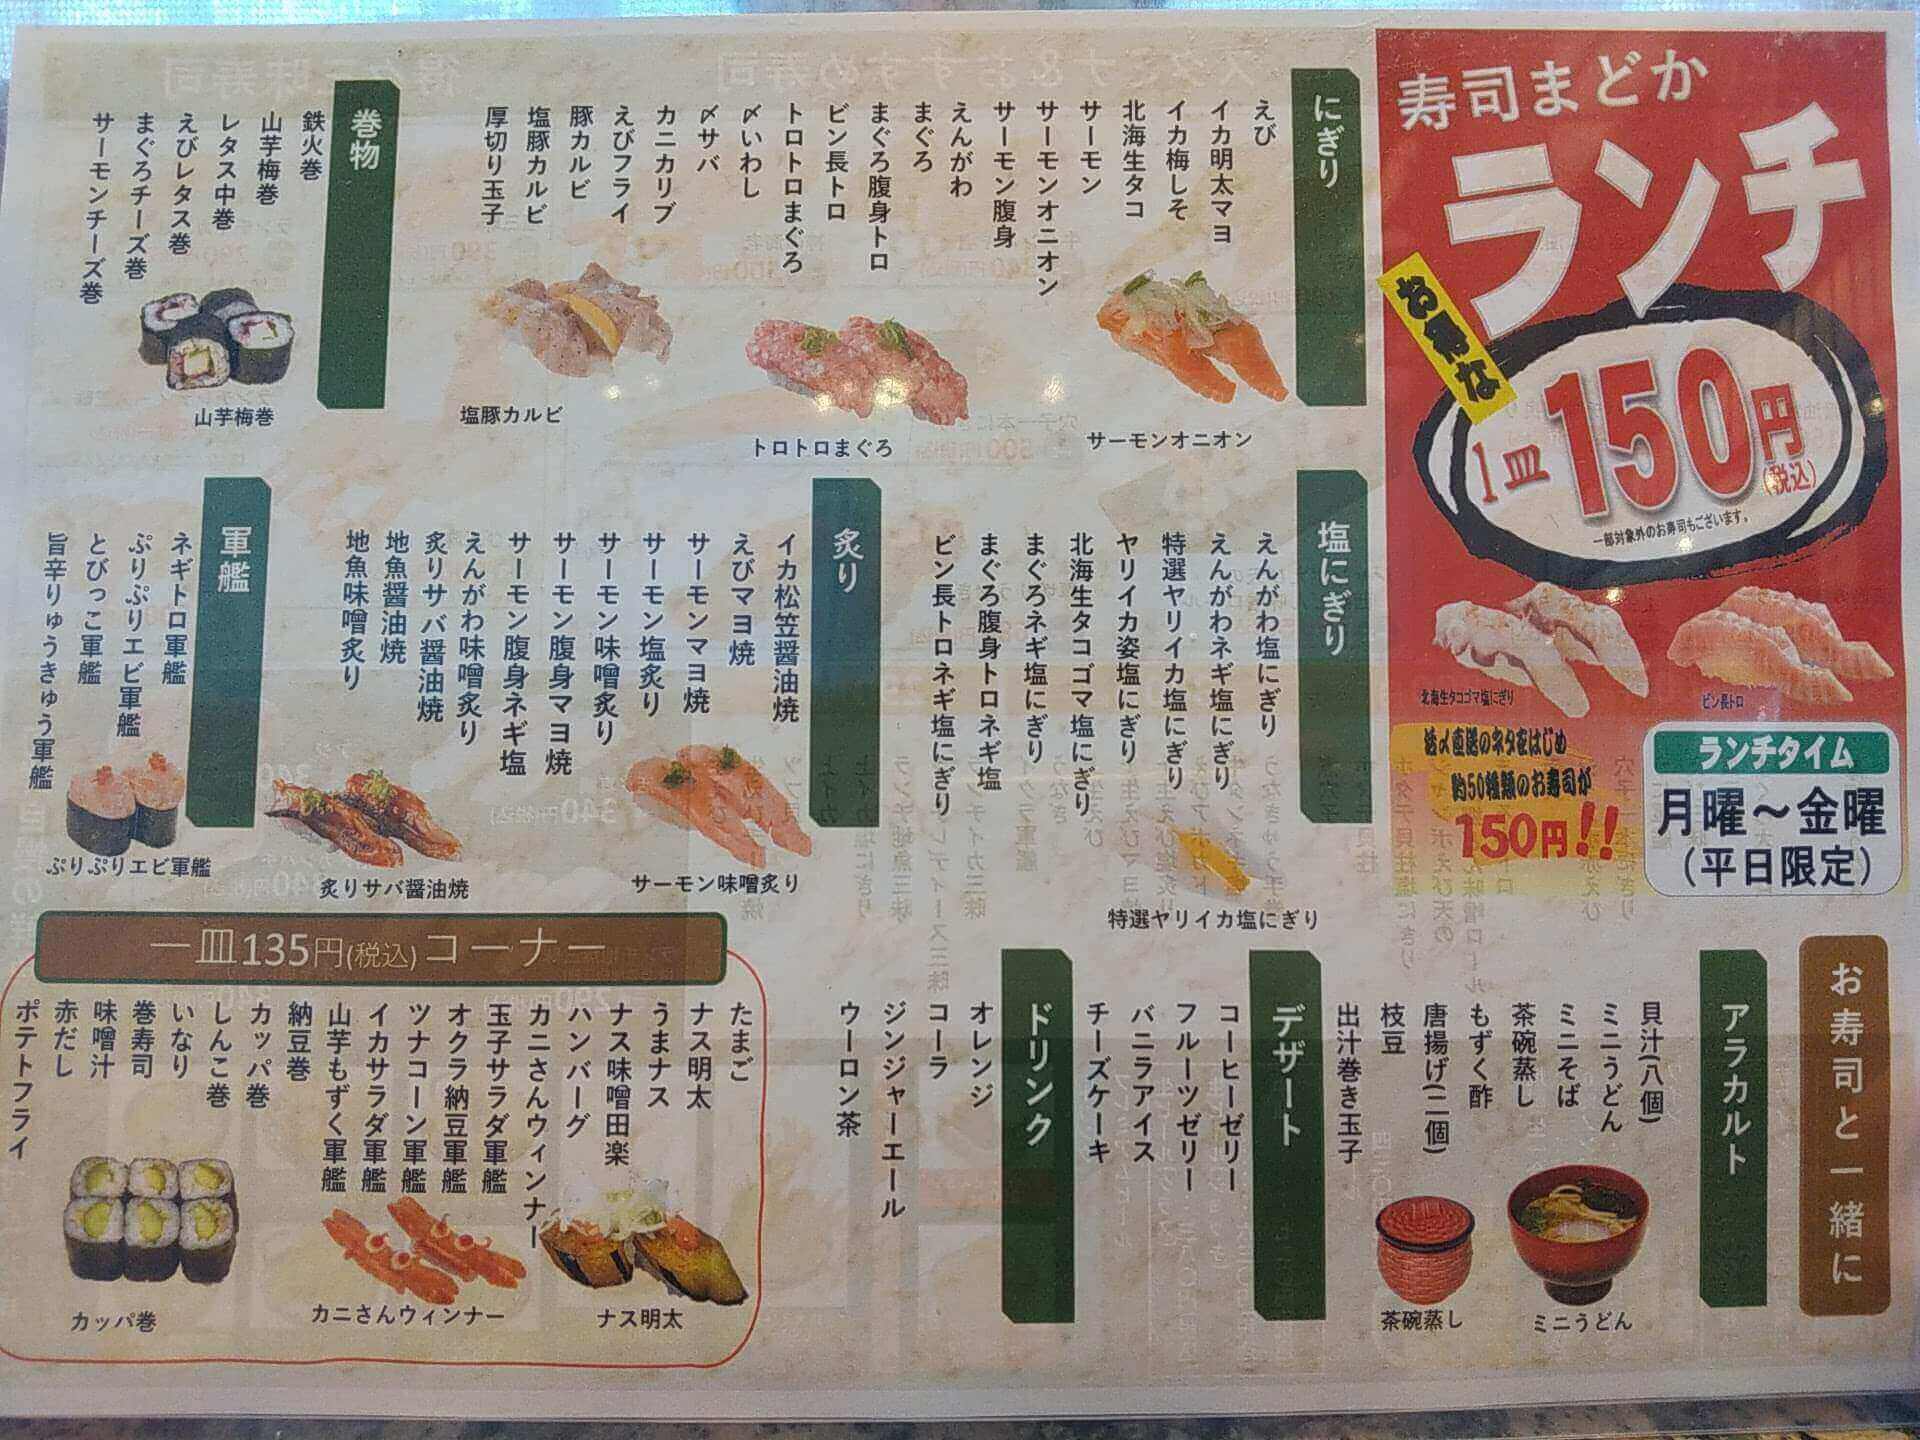 寿司まどか慈眼寺店の平日ランチタイム限定1皿150円メニュー